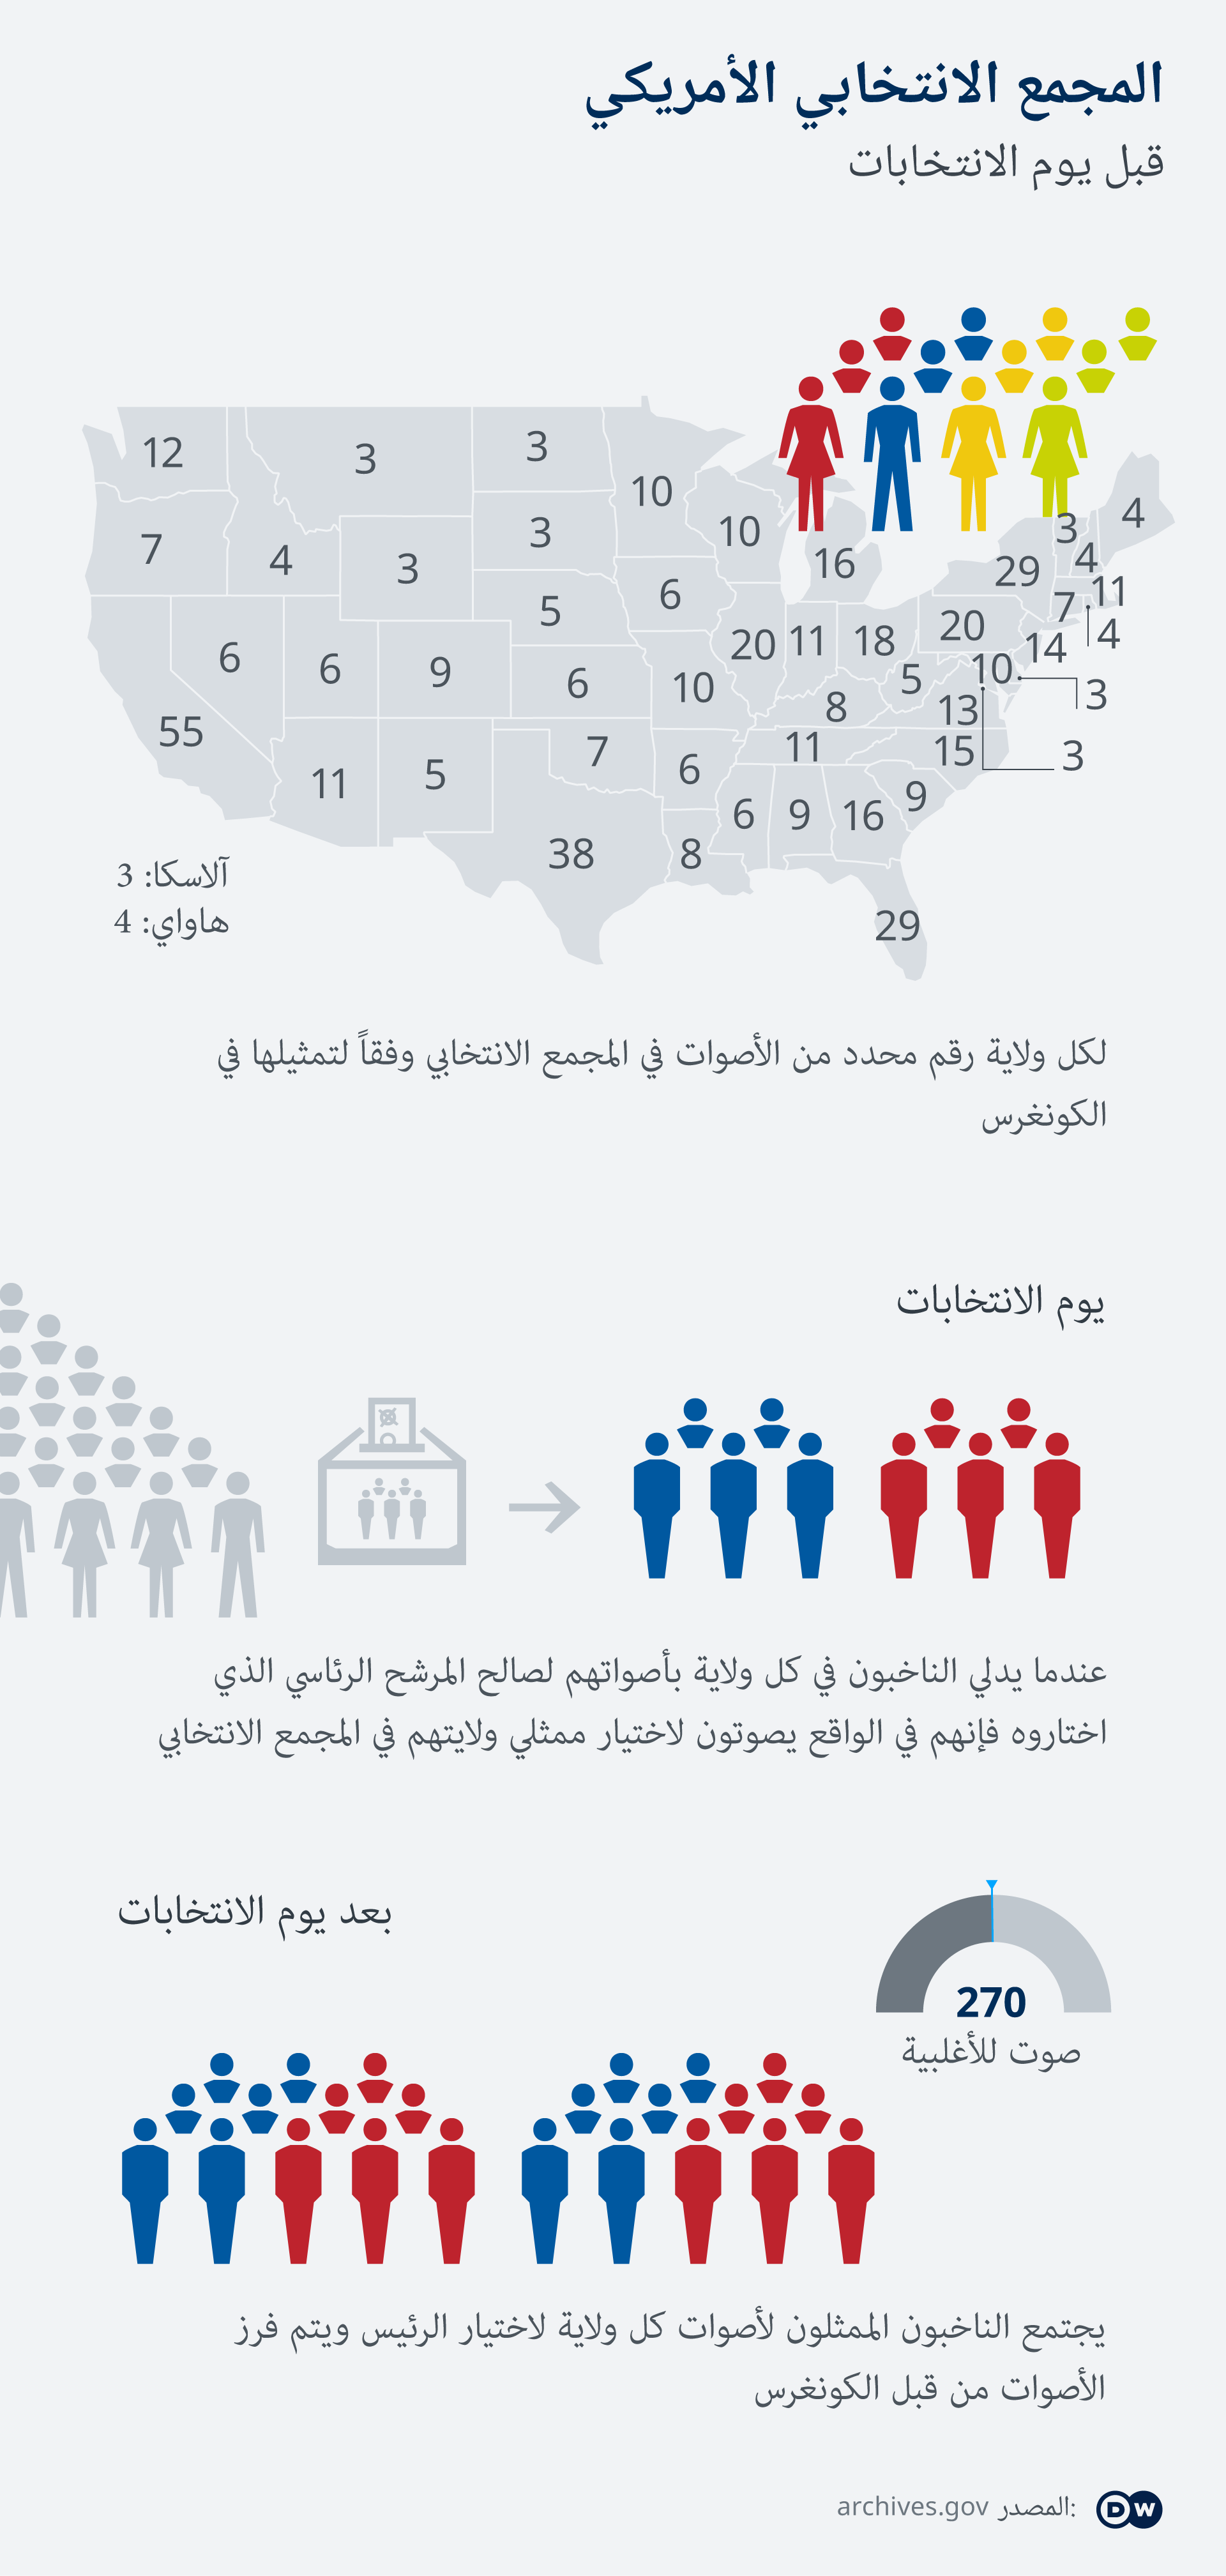 أكثر من 100 مليون أمريكي شاركوا في التصويت المبكر أخبار Dw عربية أخبار عاجلة ووجهات نظر من جميع أنحاء العالم Dw 03 11 2020